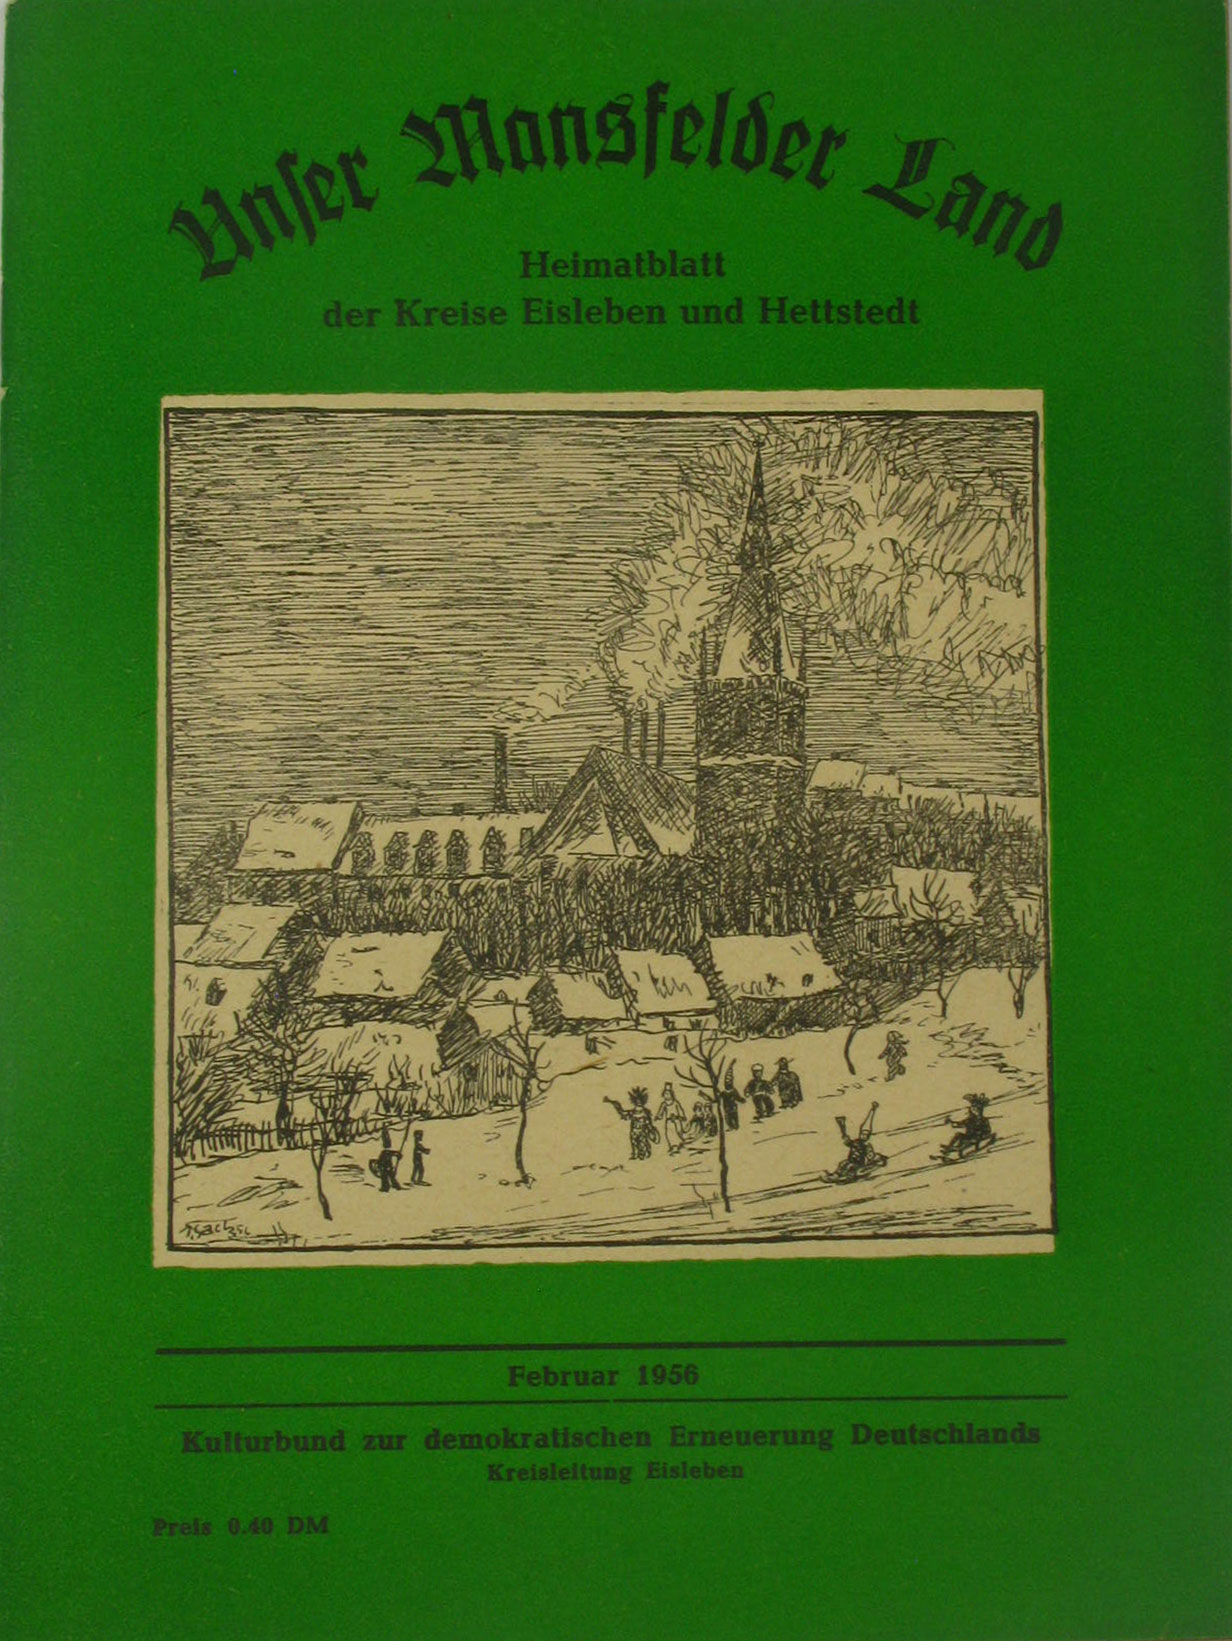 Autorenkollektiv:  Unser Mansfelder Land. Heimatblatt der Kreise Eisleben und Hettstedt (Februar 1956) 